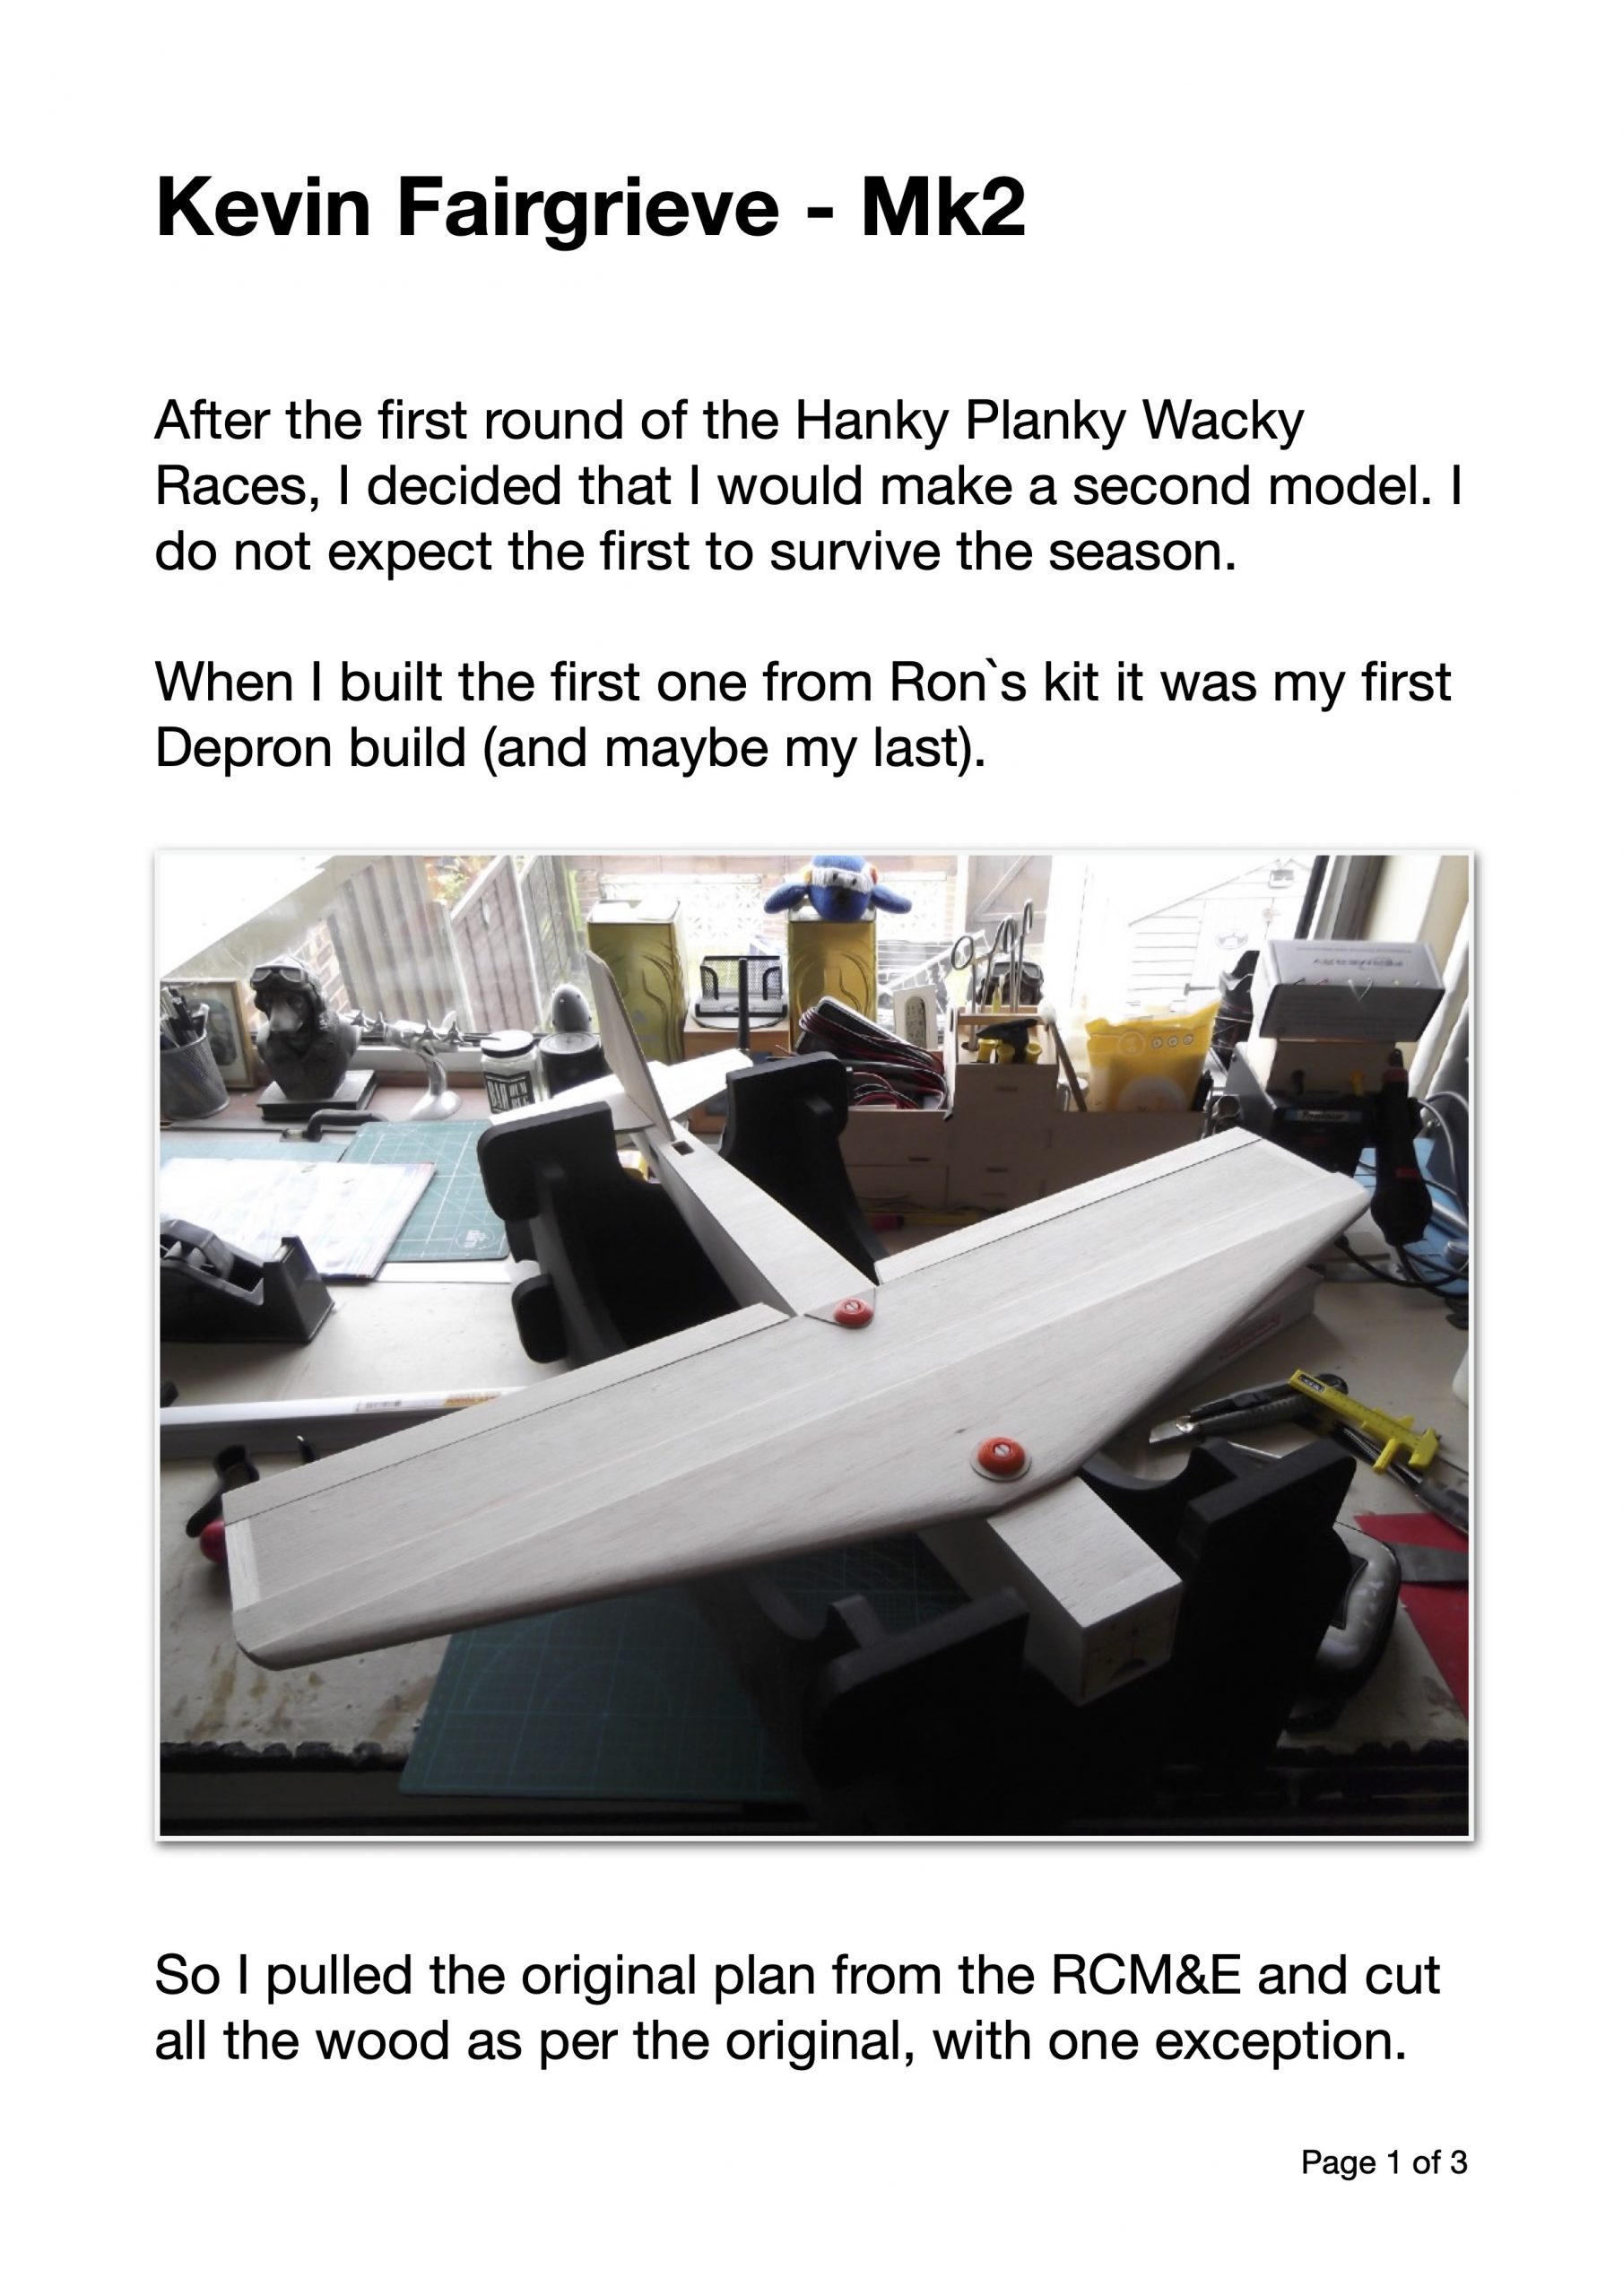 Kevin Fairgrieve, Hanky Planky Mk2